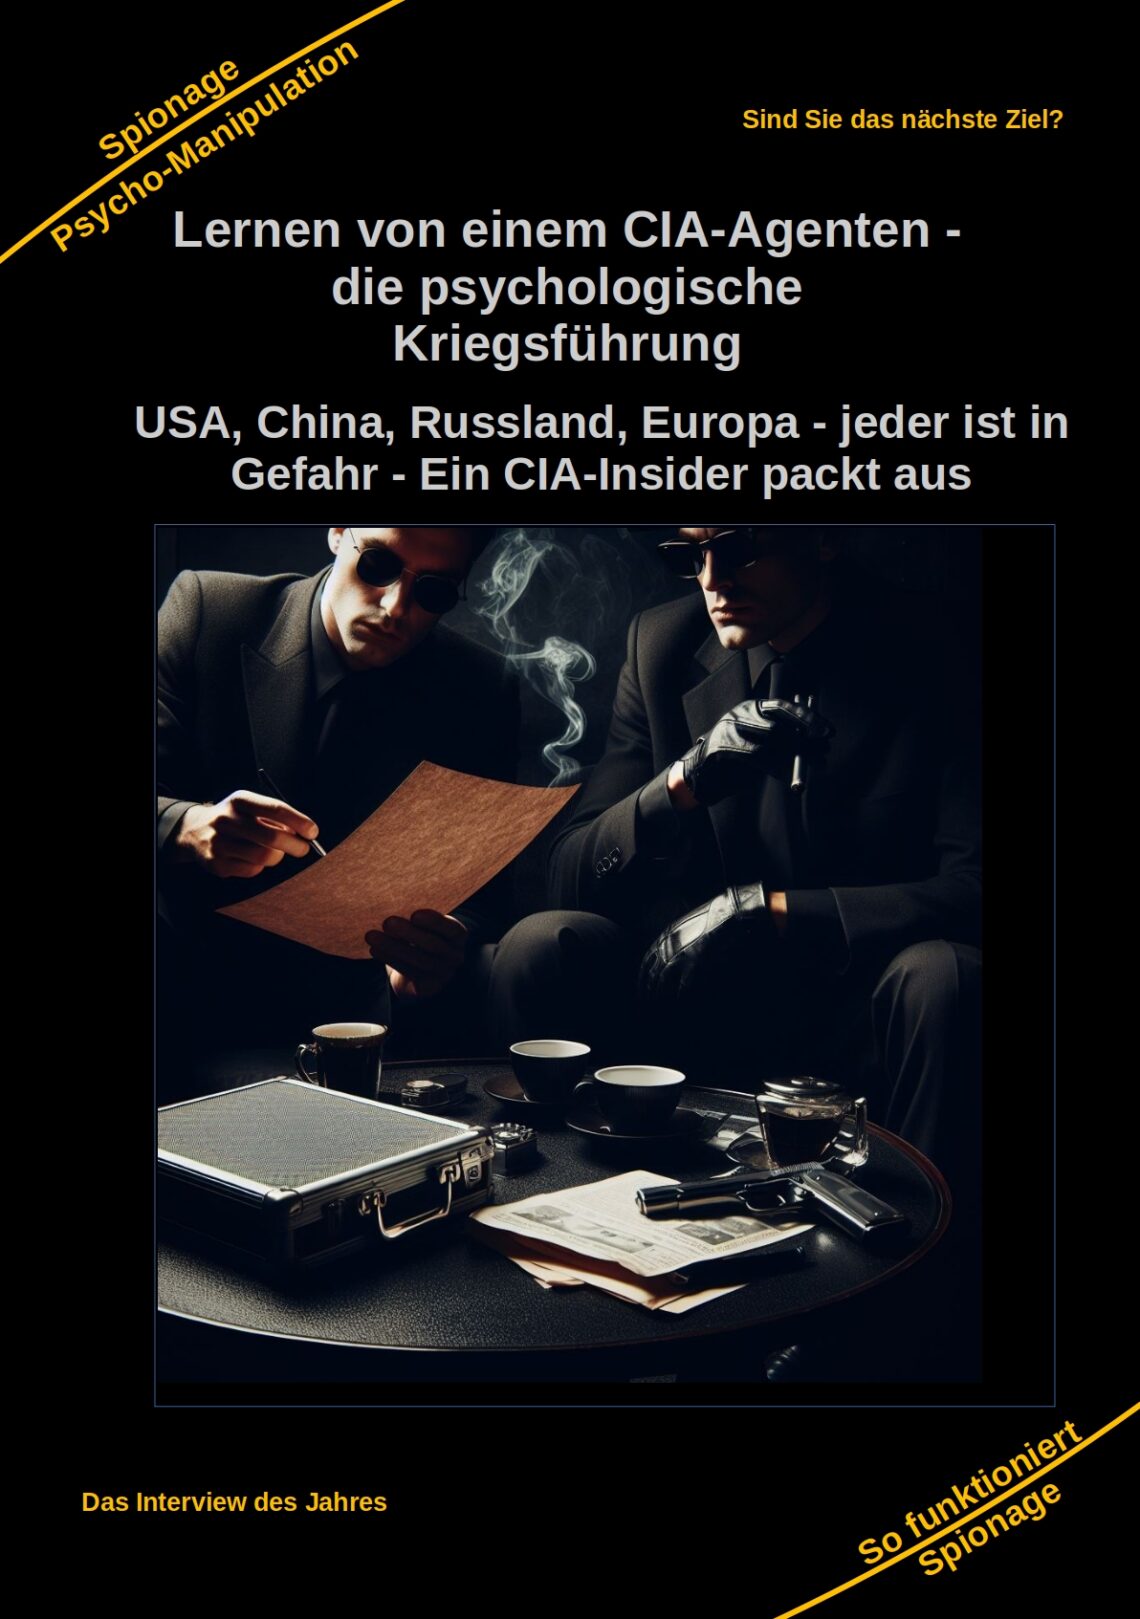 Lernen von einem CIA-Agenten - die psychologische Kriegsführung USA, China, Russland, Europa - jeder ist in Gefahr - Ein CIA-Insider packt aus